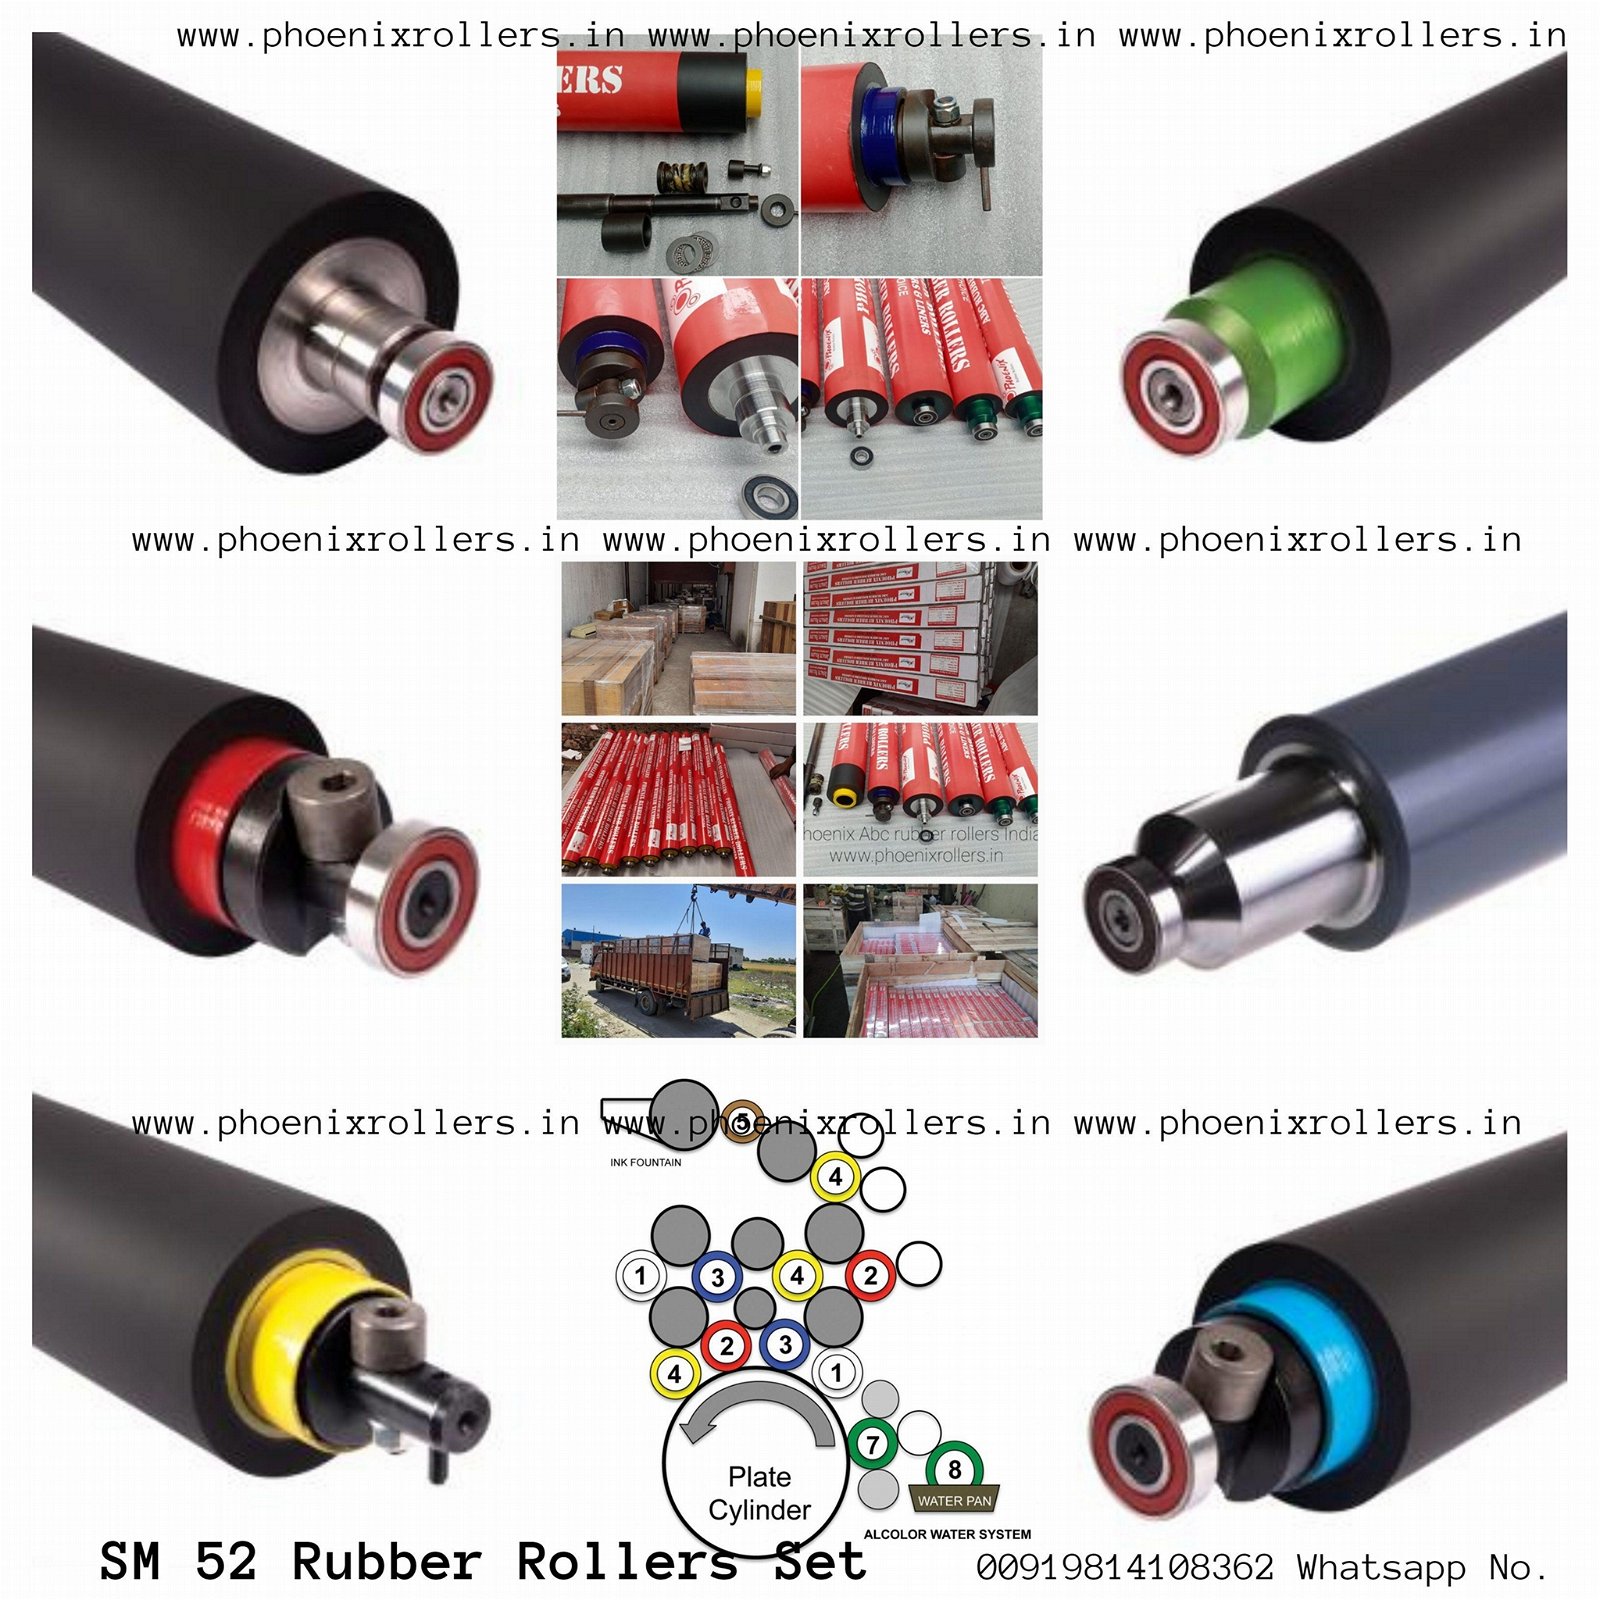 Rubber rollers Heidelberg SM 52 Speedmaster printing offset machine